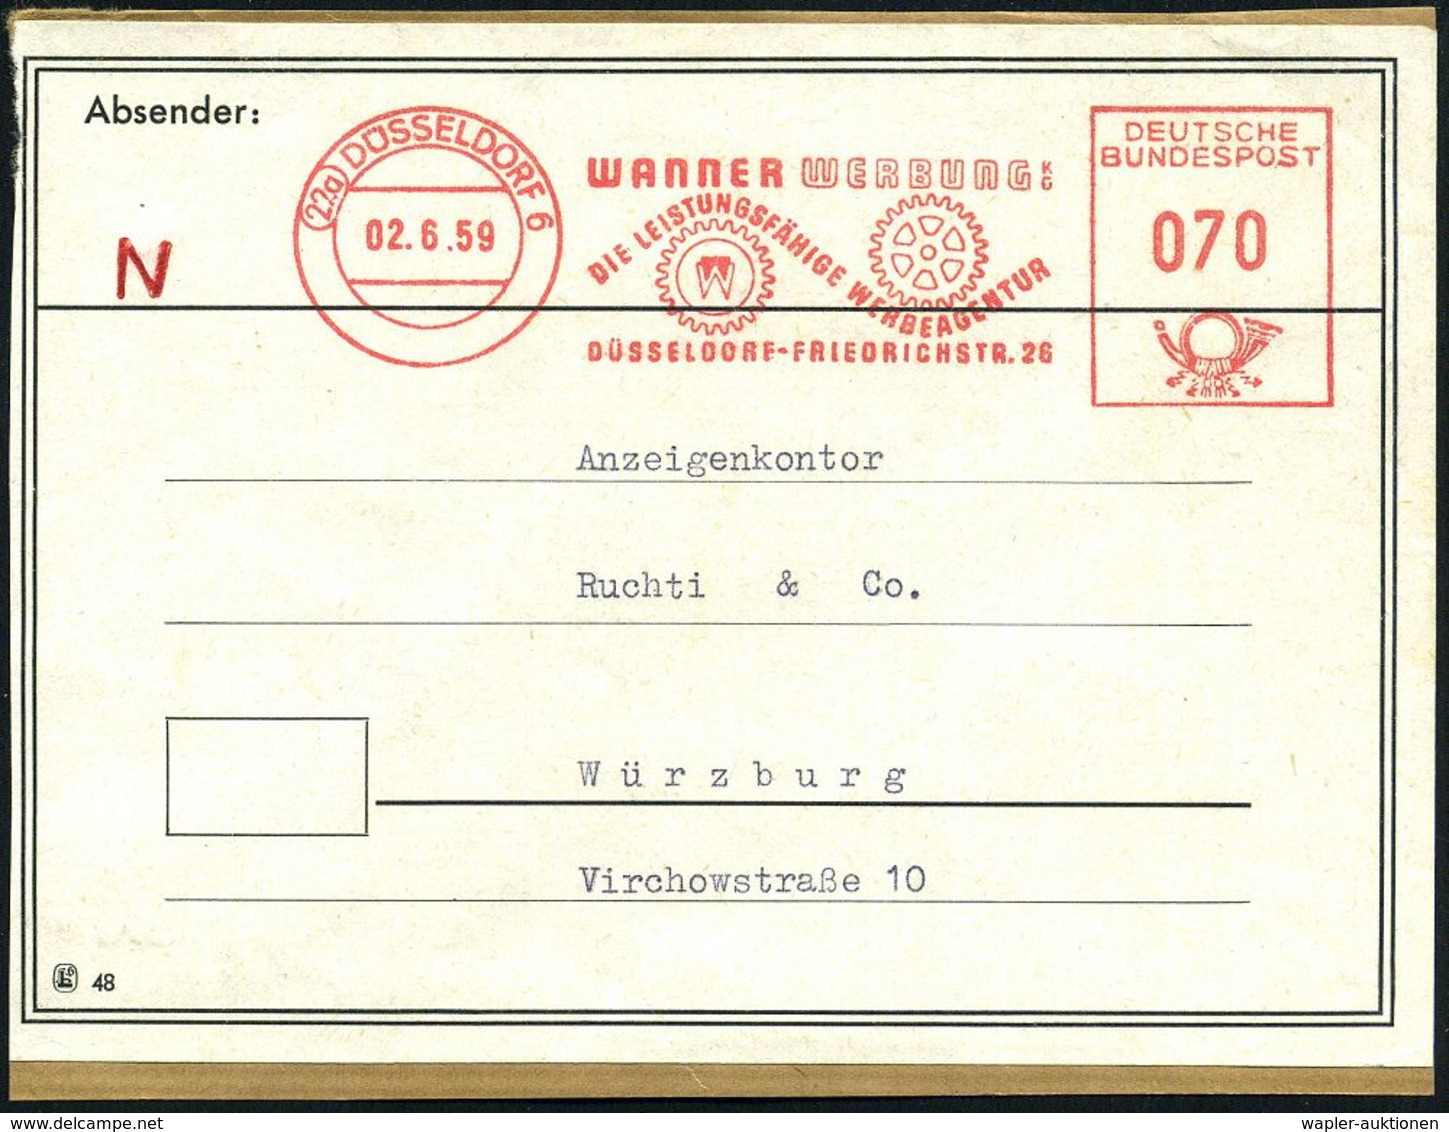 DRUCK / DRUCKTECHNIKEN / DRUCKMASCHINEN : (22a) DÜSSELDORF 6/ WANNER WERBUNG KG.. 1959 (2.6.) AFS 070 Pf. (2 Druck-Zahnr - Unclassified